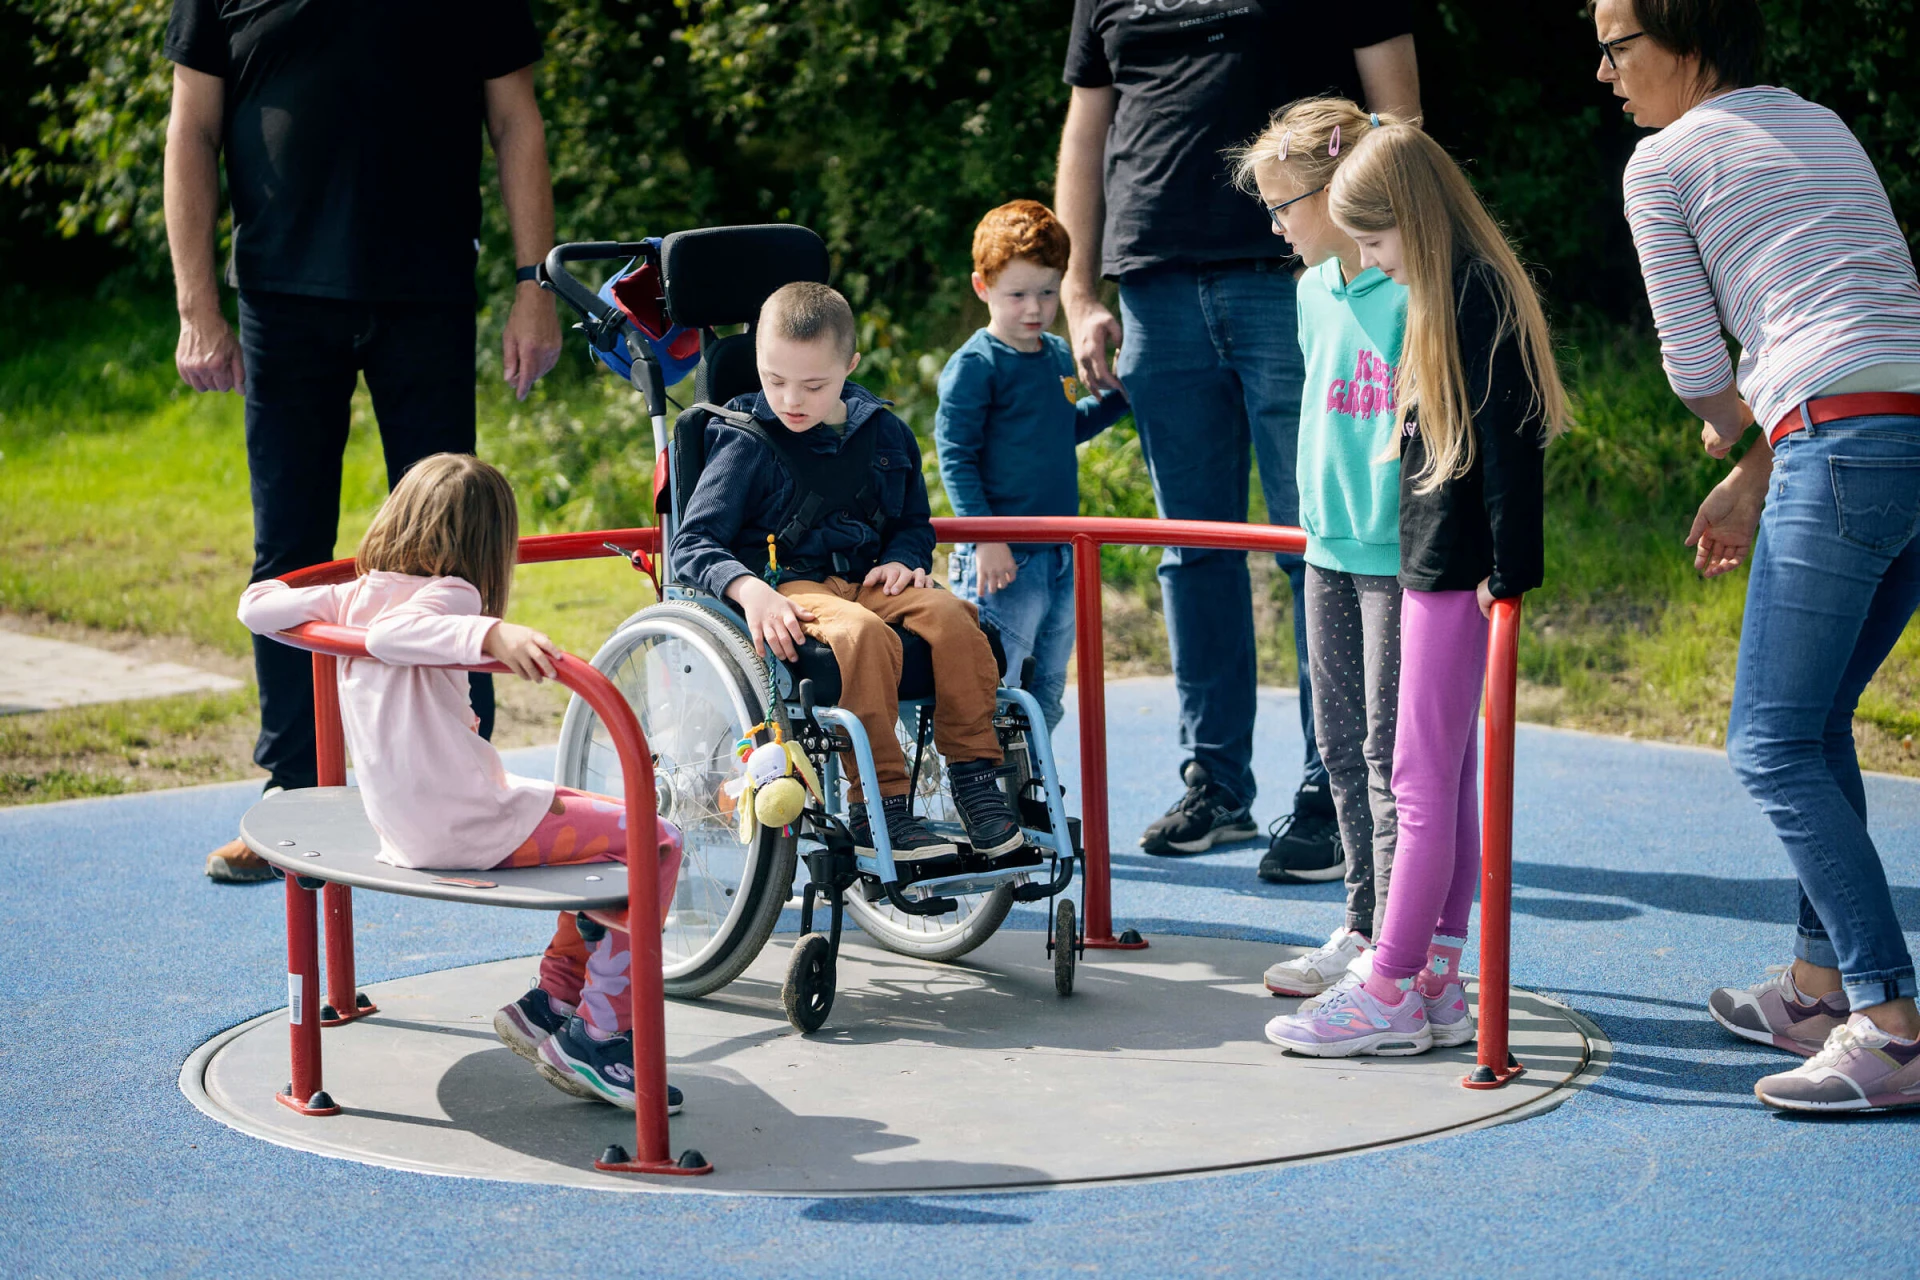 Kinder spielen auf einem Rollstuhlkarussell auf einem Spielplatz